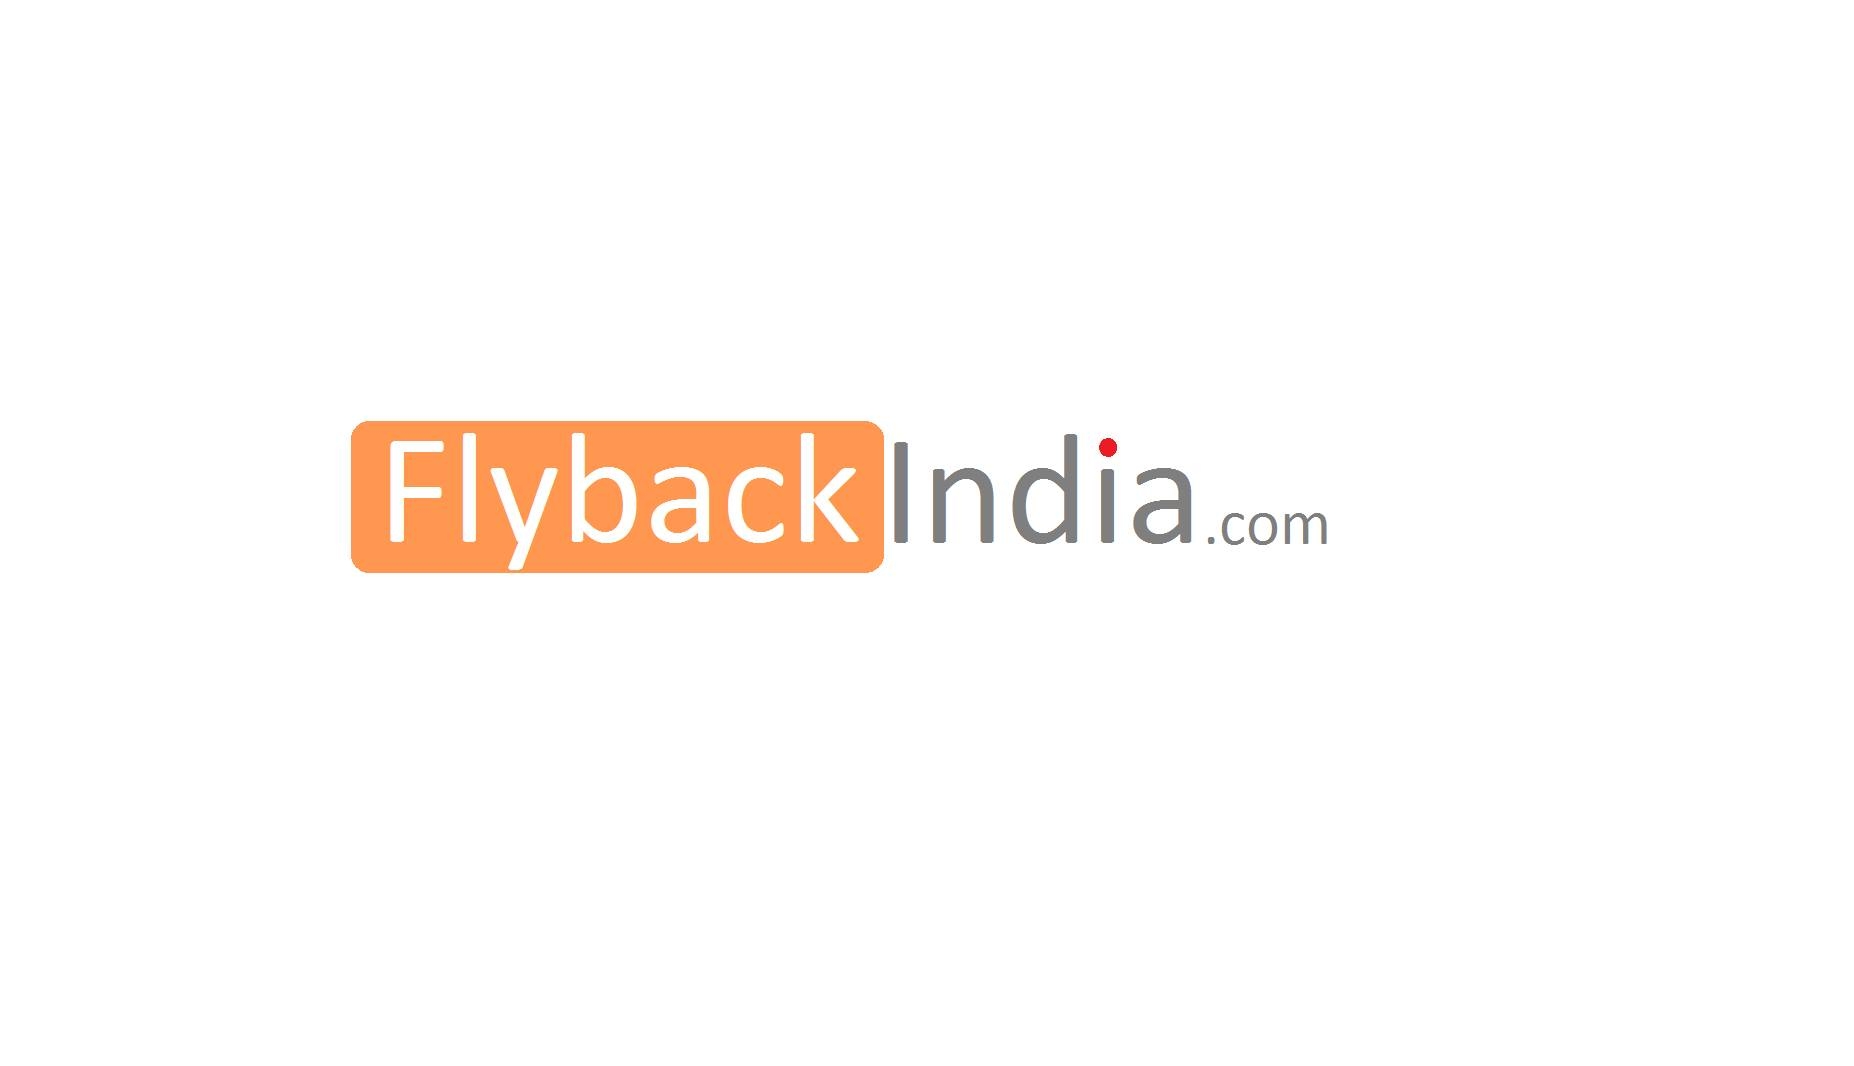 flybackindia